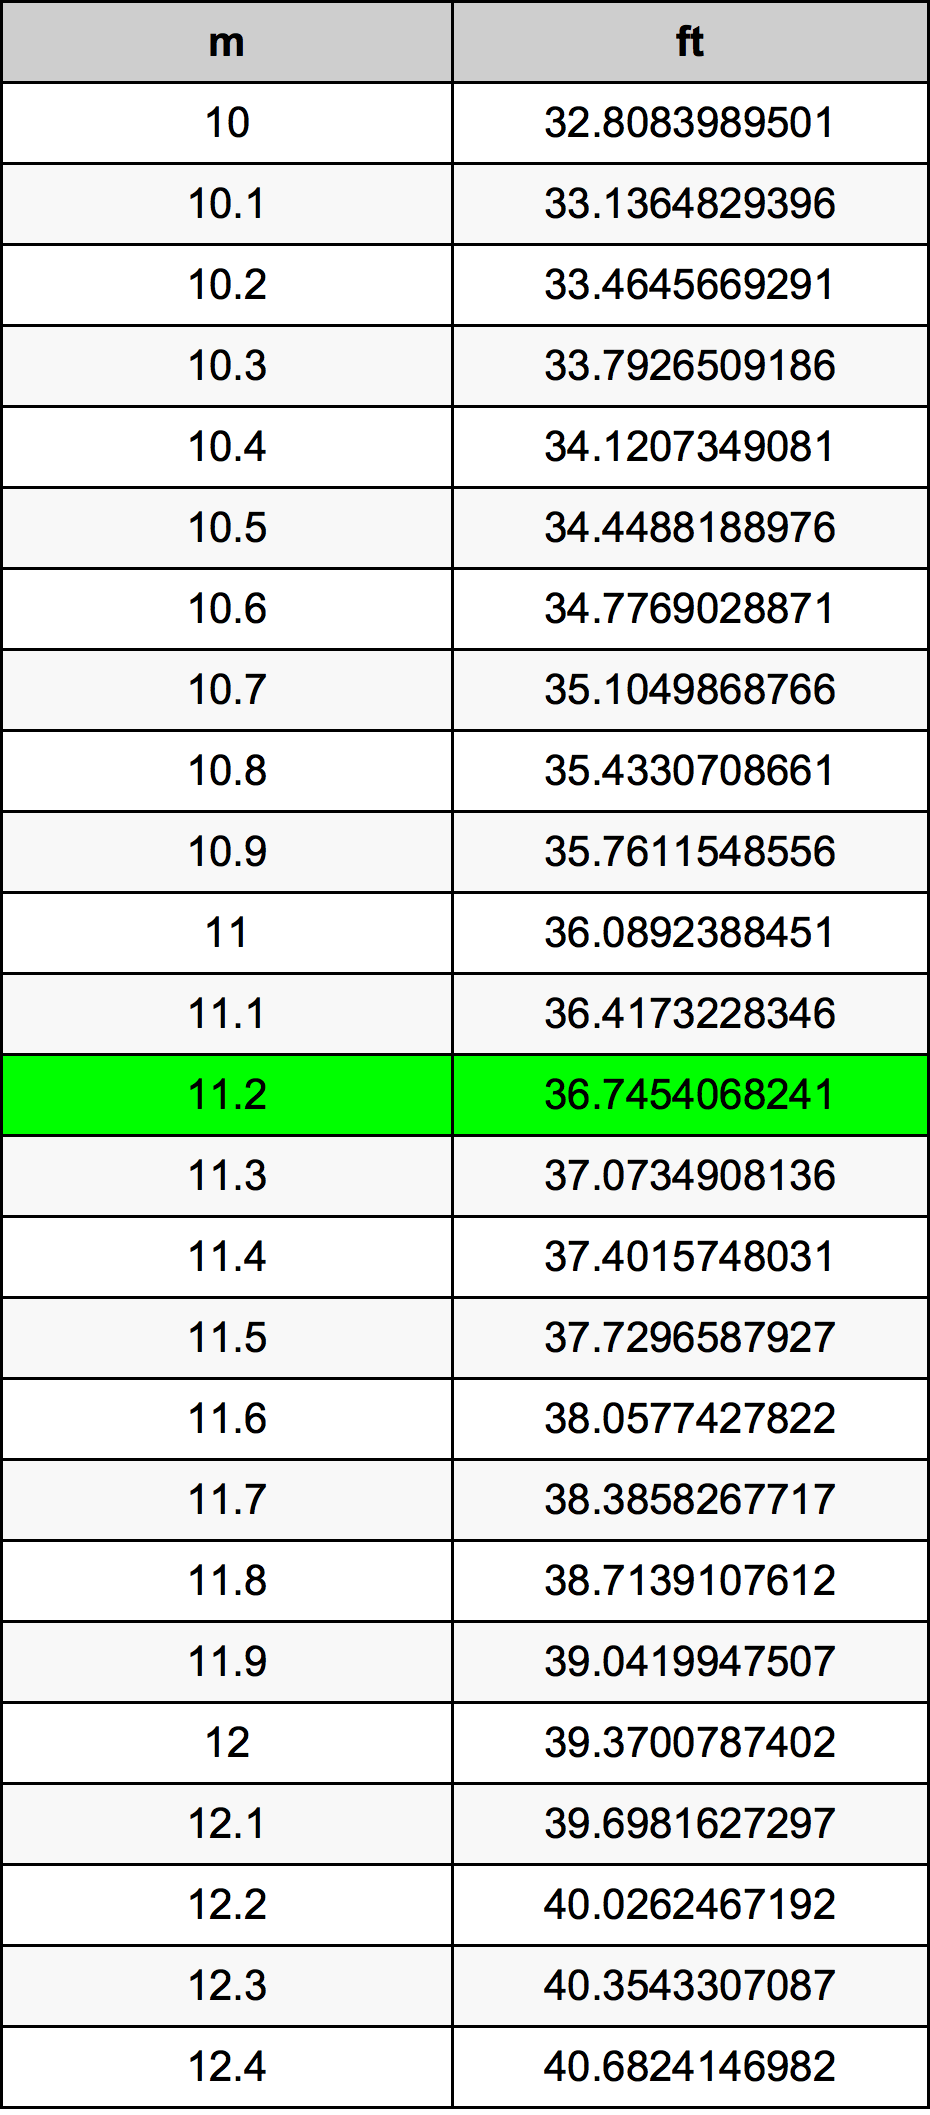 11.2 Metru tabelul de conversie